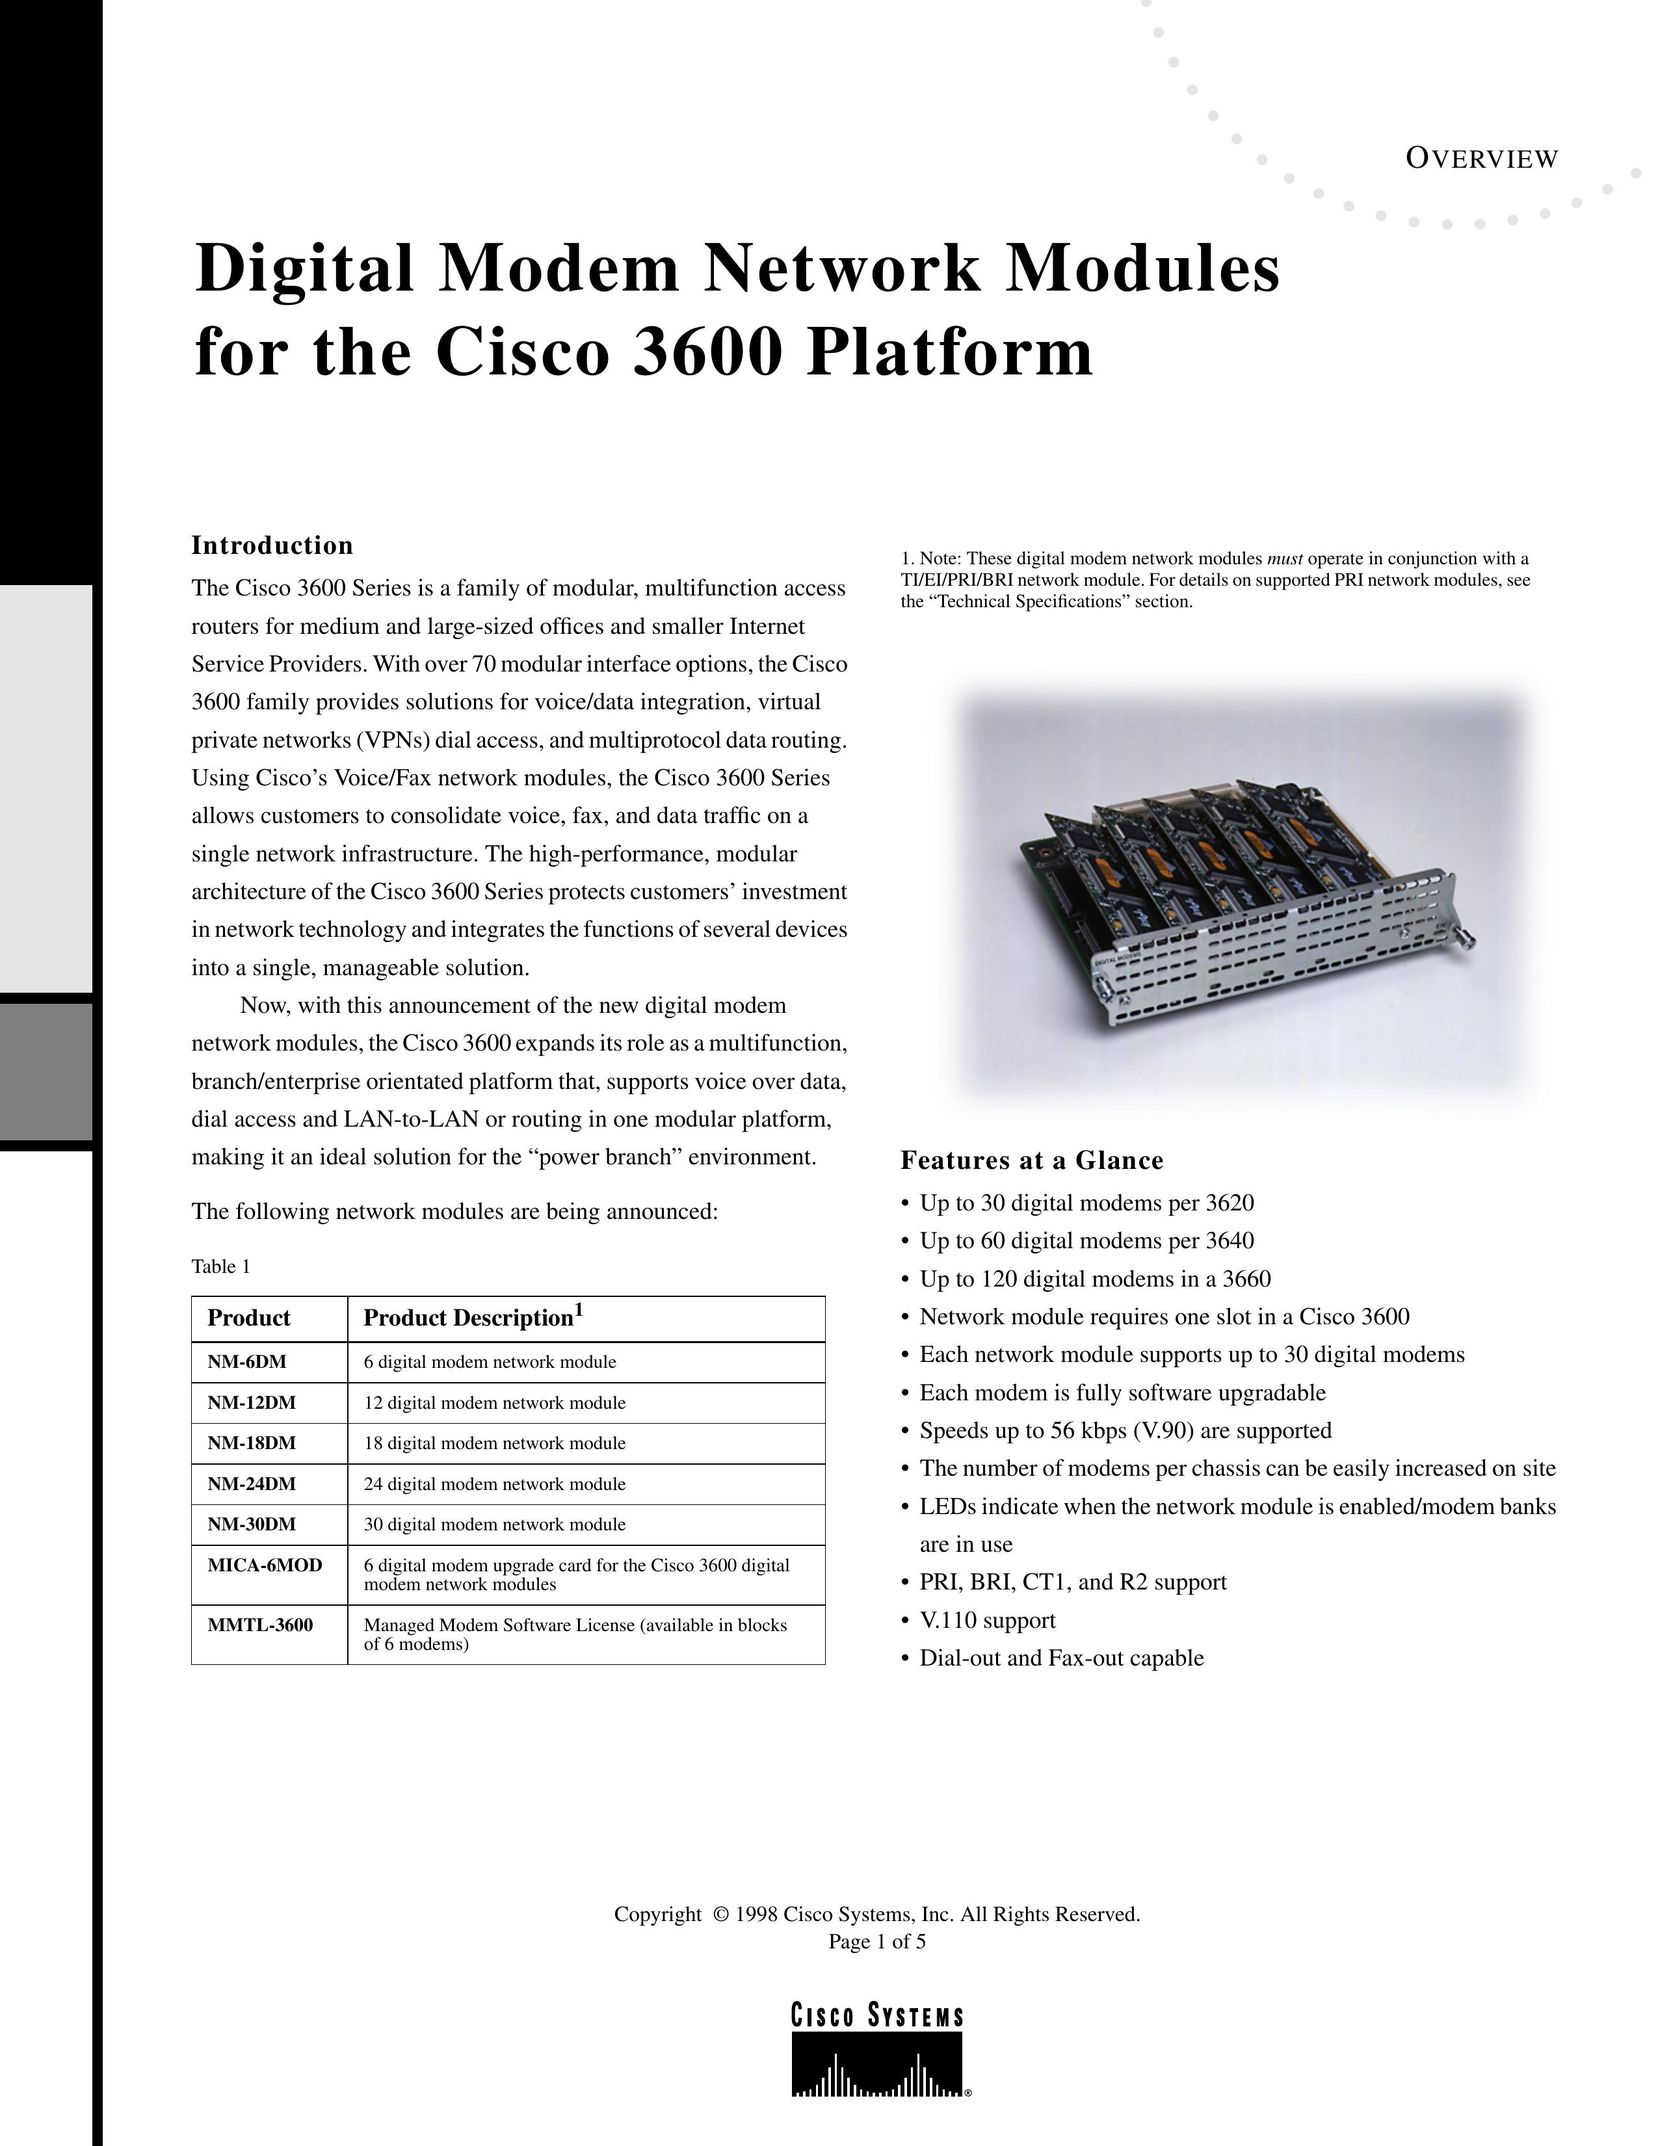 Cisco Systems NM24DM Modem User Manual